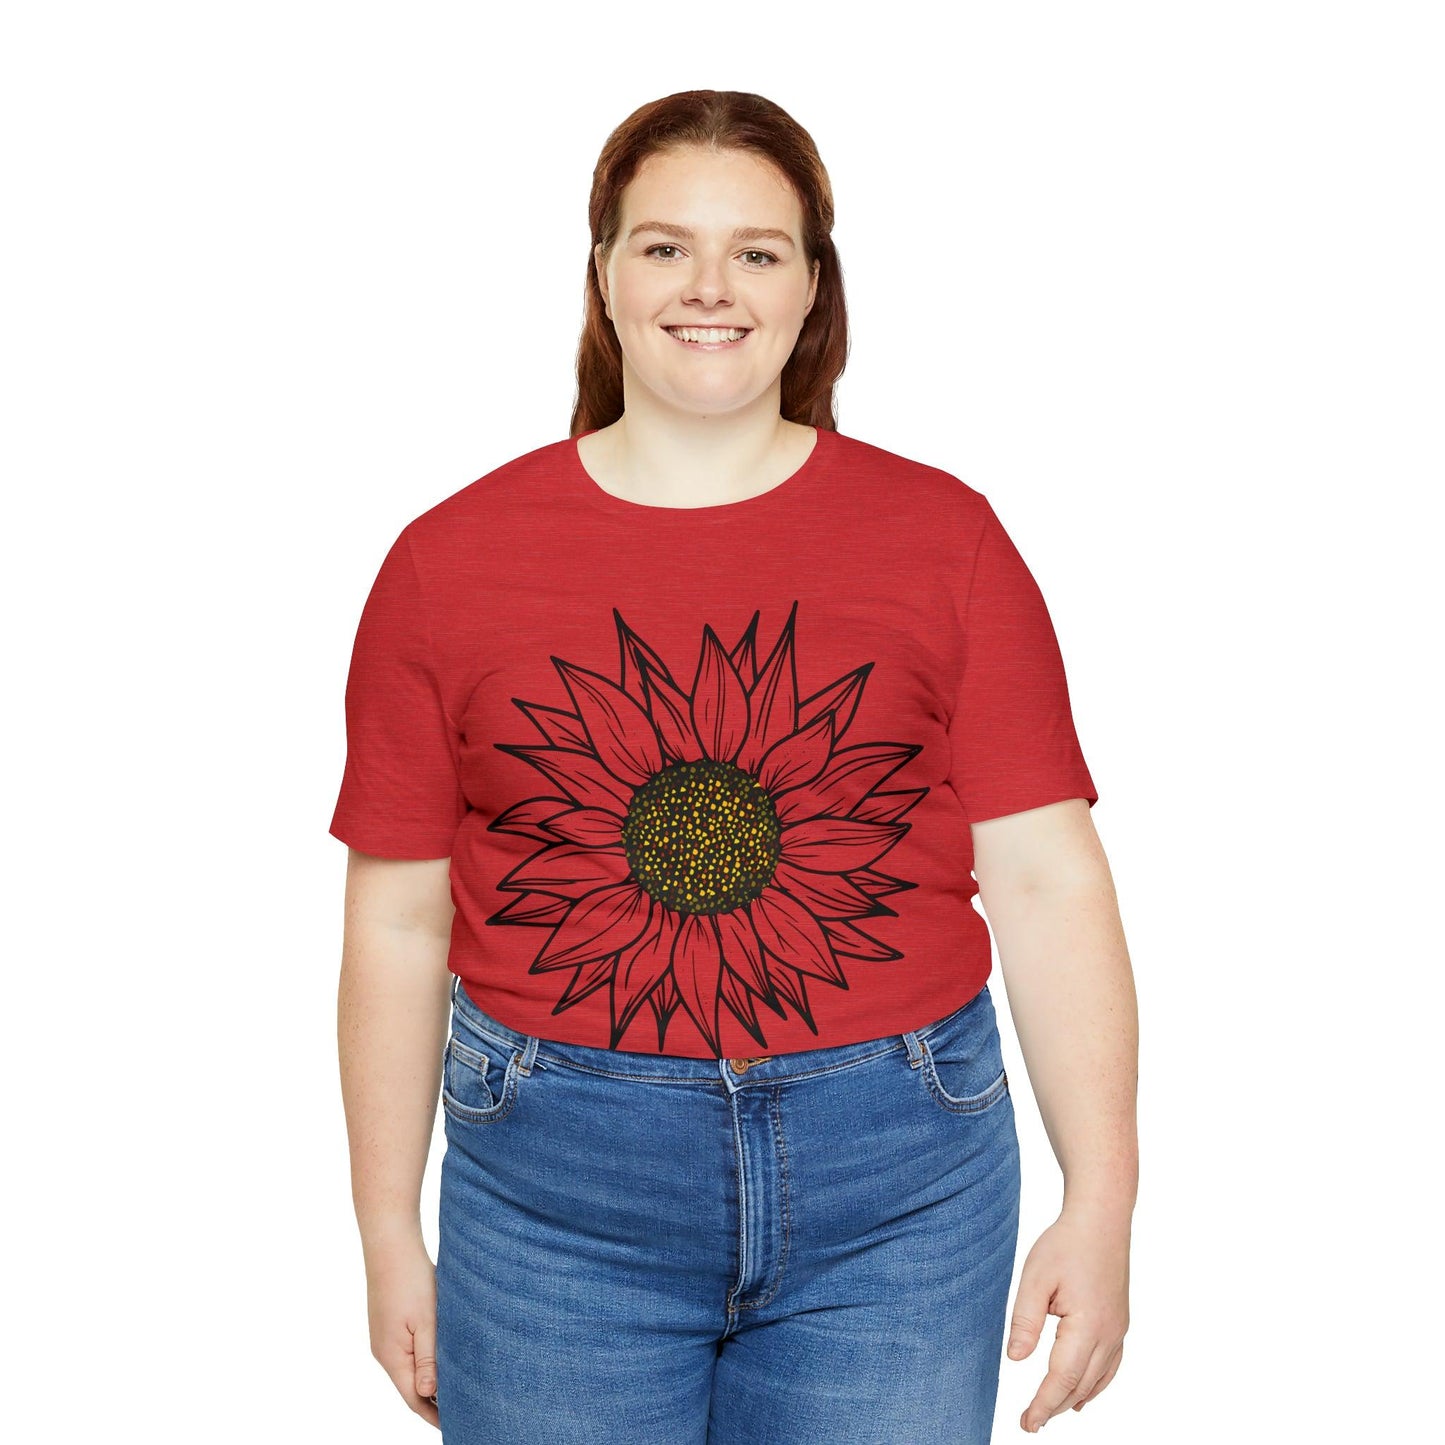 Sunflower Shirt, Floral Tee Shirt, Flower Shirt, Garden Shirt, Womens Fall Summer Shirt Sunshine Tee, Gift for Gardener, Nature love shirt